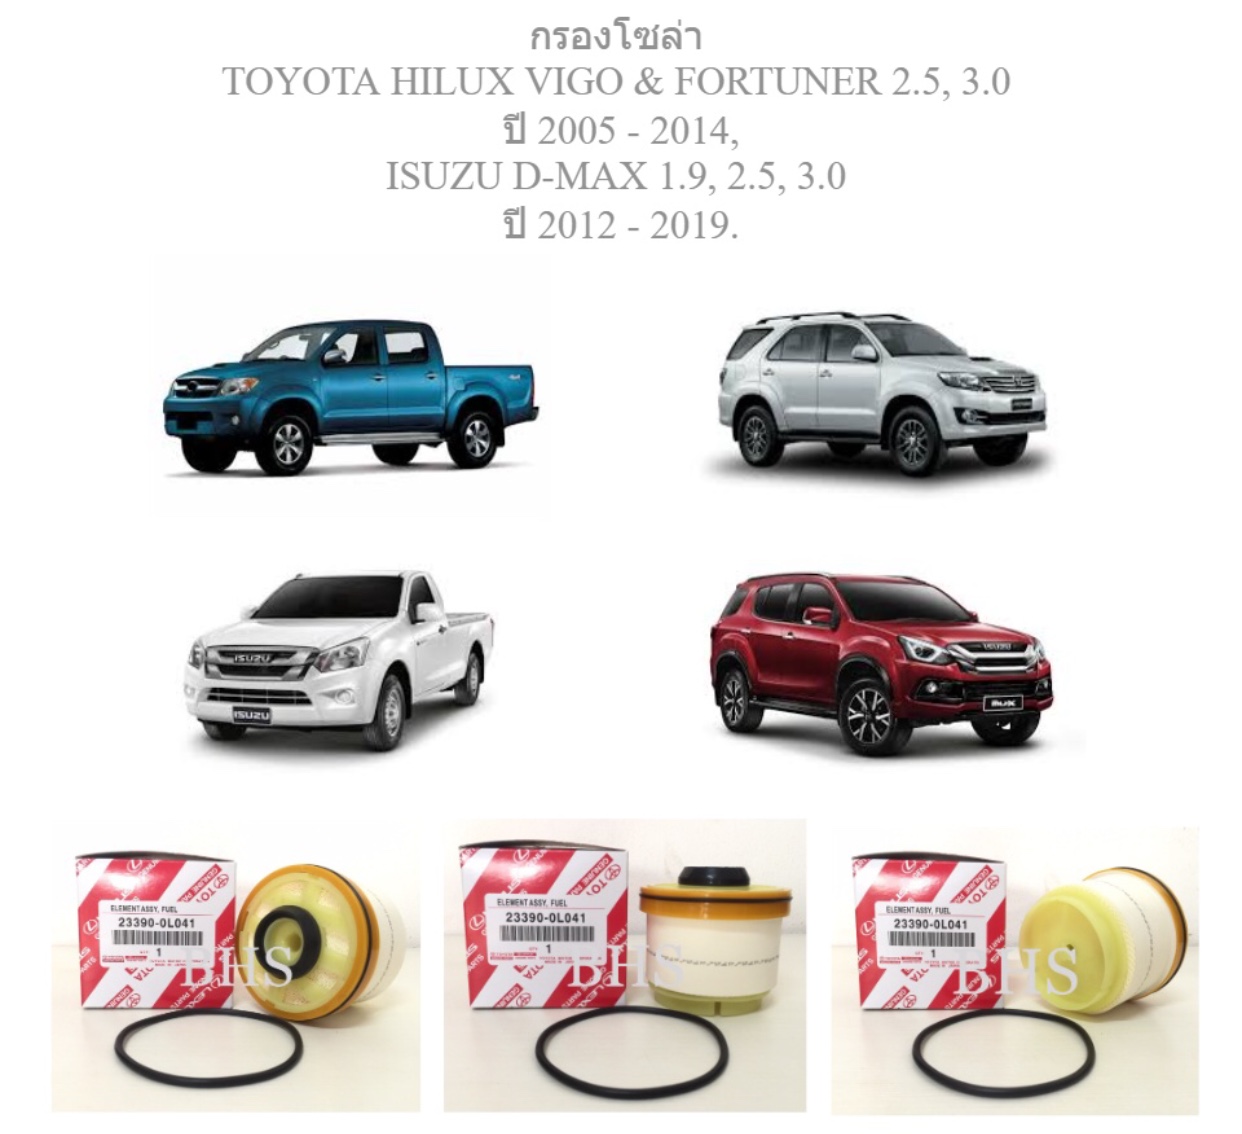 กรองโซล่า โตโยต้า ไฮลักซ์ วีโก้ & ฟอร์จูนเนอร์ 2.5, 3.0 / Diesel Fuel Filter TOYOTA HILUX VIGO & FORTUNER 2.5, 3.0 ปี 2005 - 2014, ISUZU D-MAX 1.9, 2.5, 3.0 ปี 2012 - 2019.